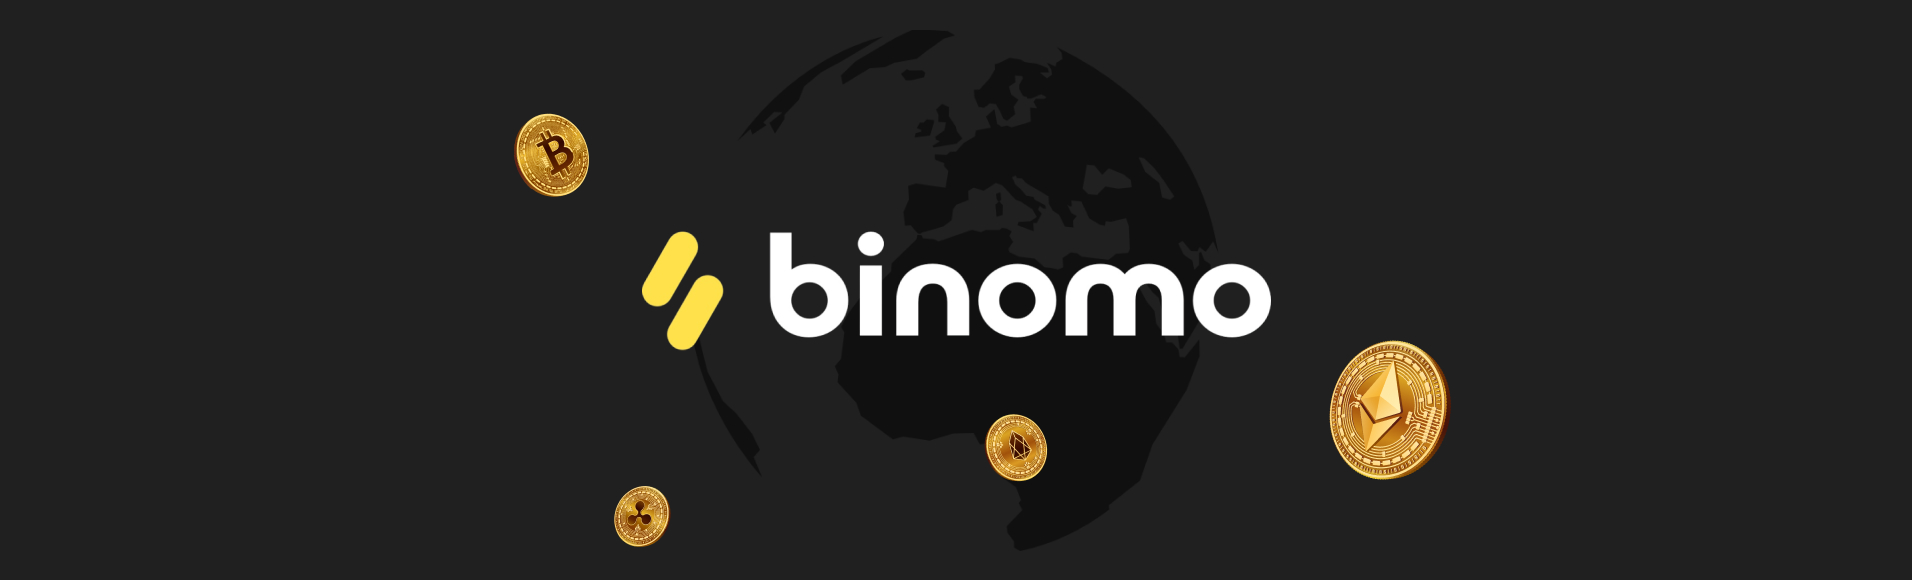 ดัชนี Cryptocurrency จากโบรกเกอร์« Binomo » - มีกำไรเสมอ